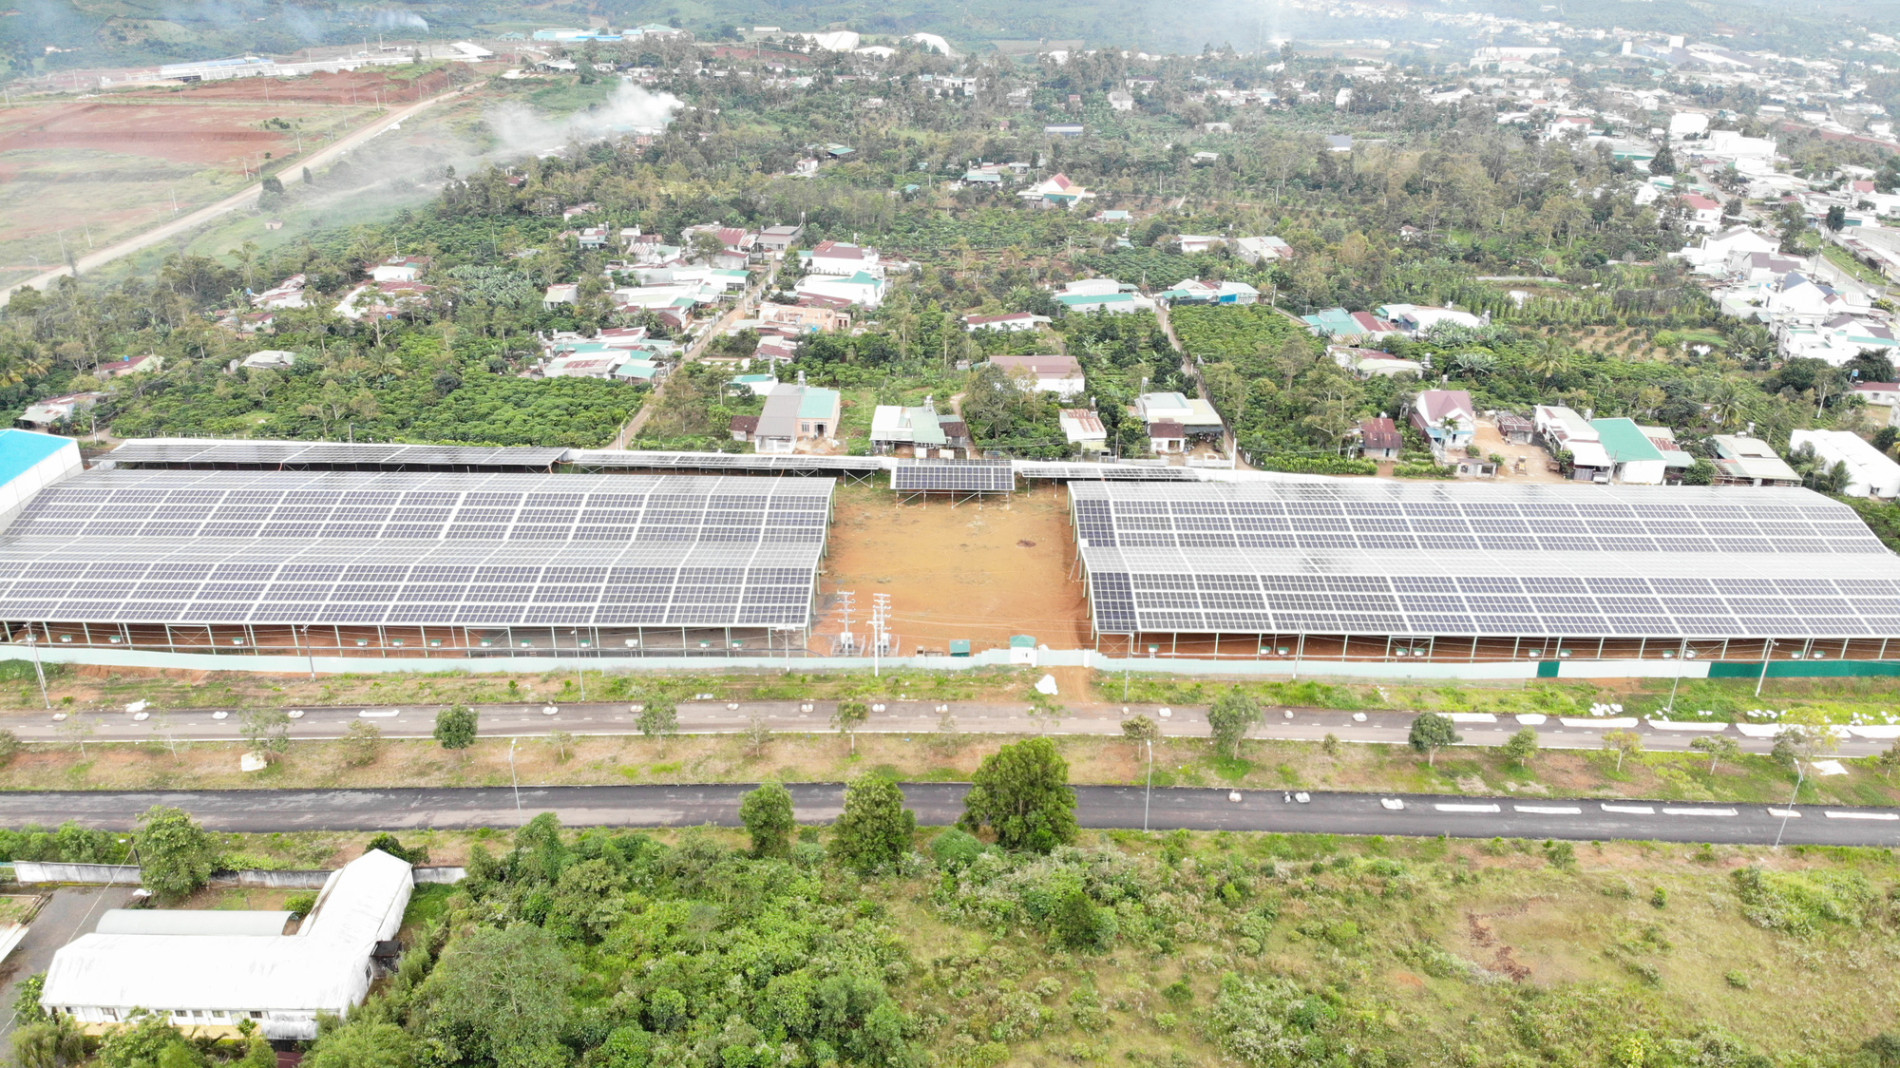 Lâm Đồng:Rà soát, xử lý việc cho thuê đất trong khu công nghiệp làm điện mặt trời - Ảnh 1.